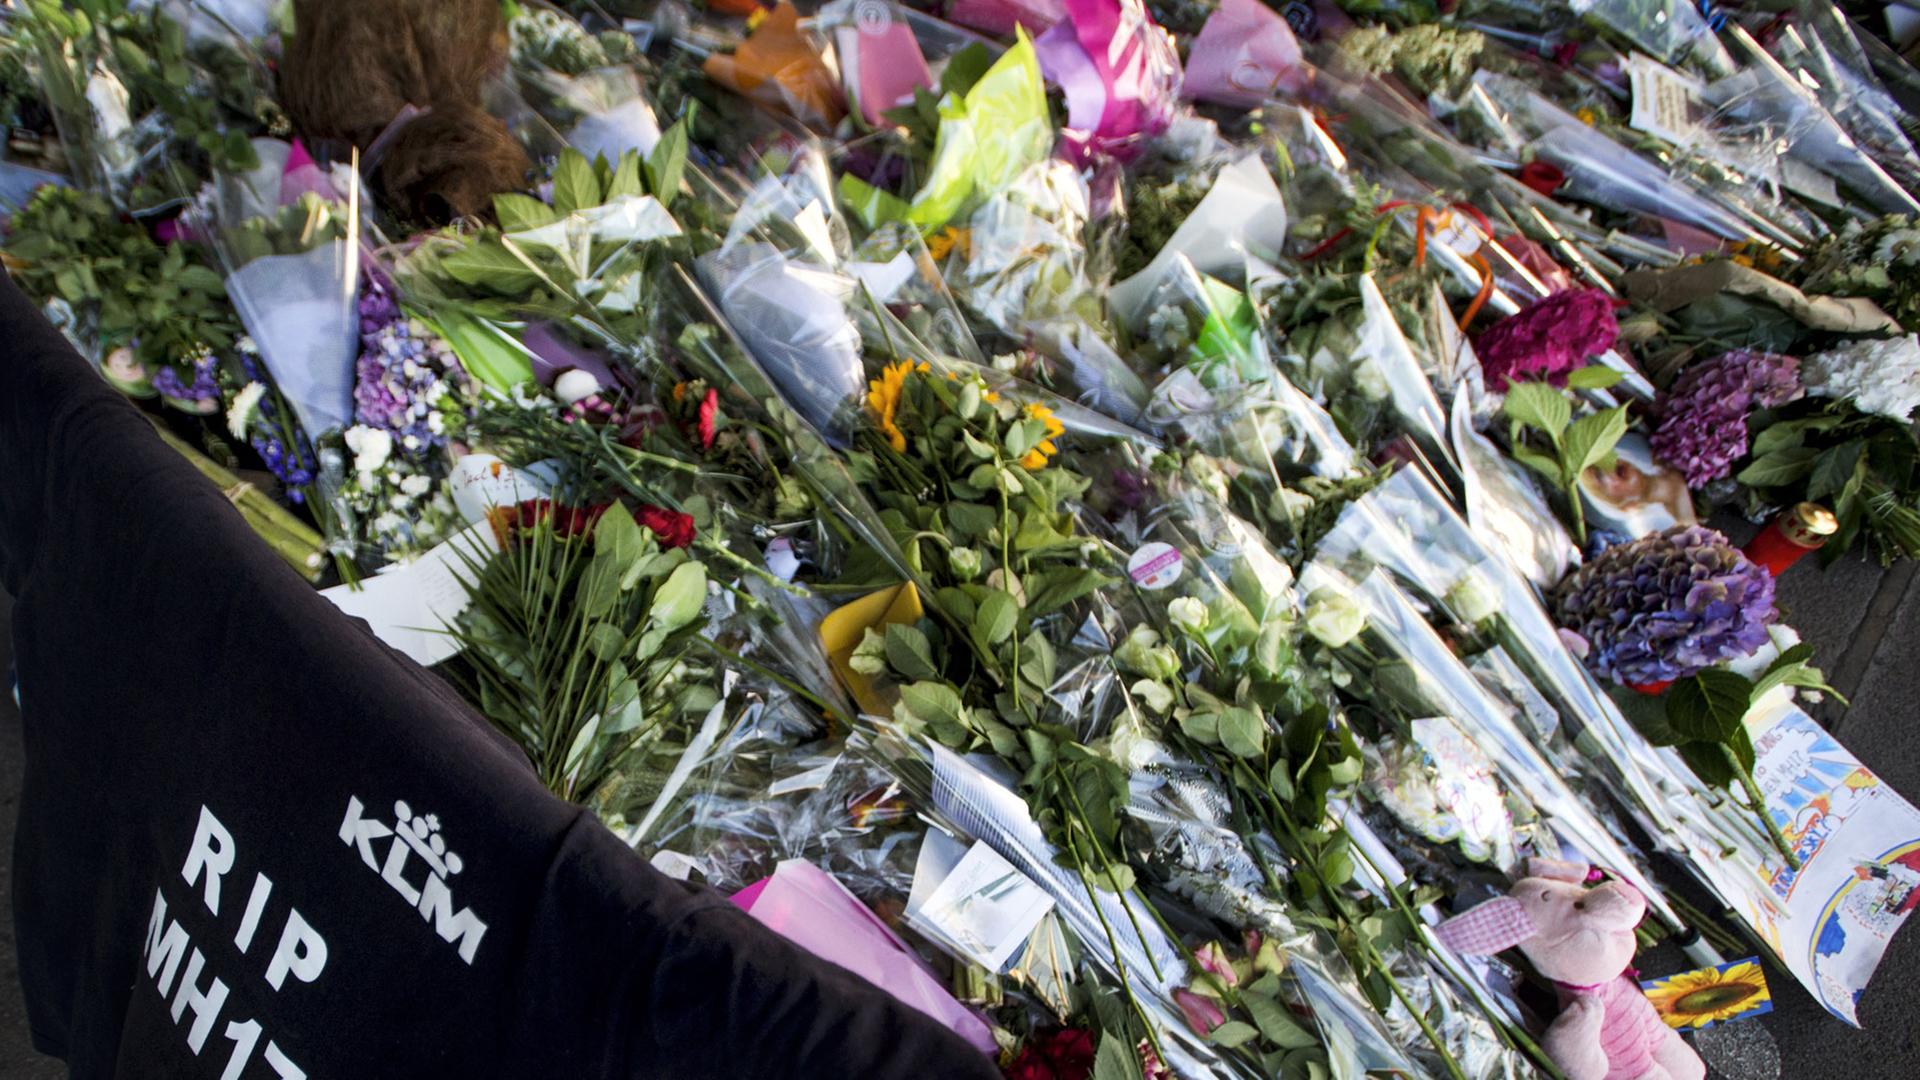 Blumen, Kerzen und T-Shirt mit der Aufschrift "RIP MH17" erinnern am niederländischen Flughafen Schiphol an die Opfer der in der Ost-Ukraine abgestürzten Malaysia-Airlines-Maschine.